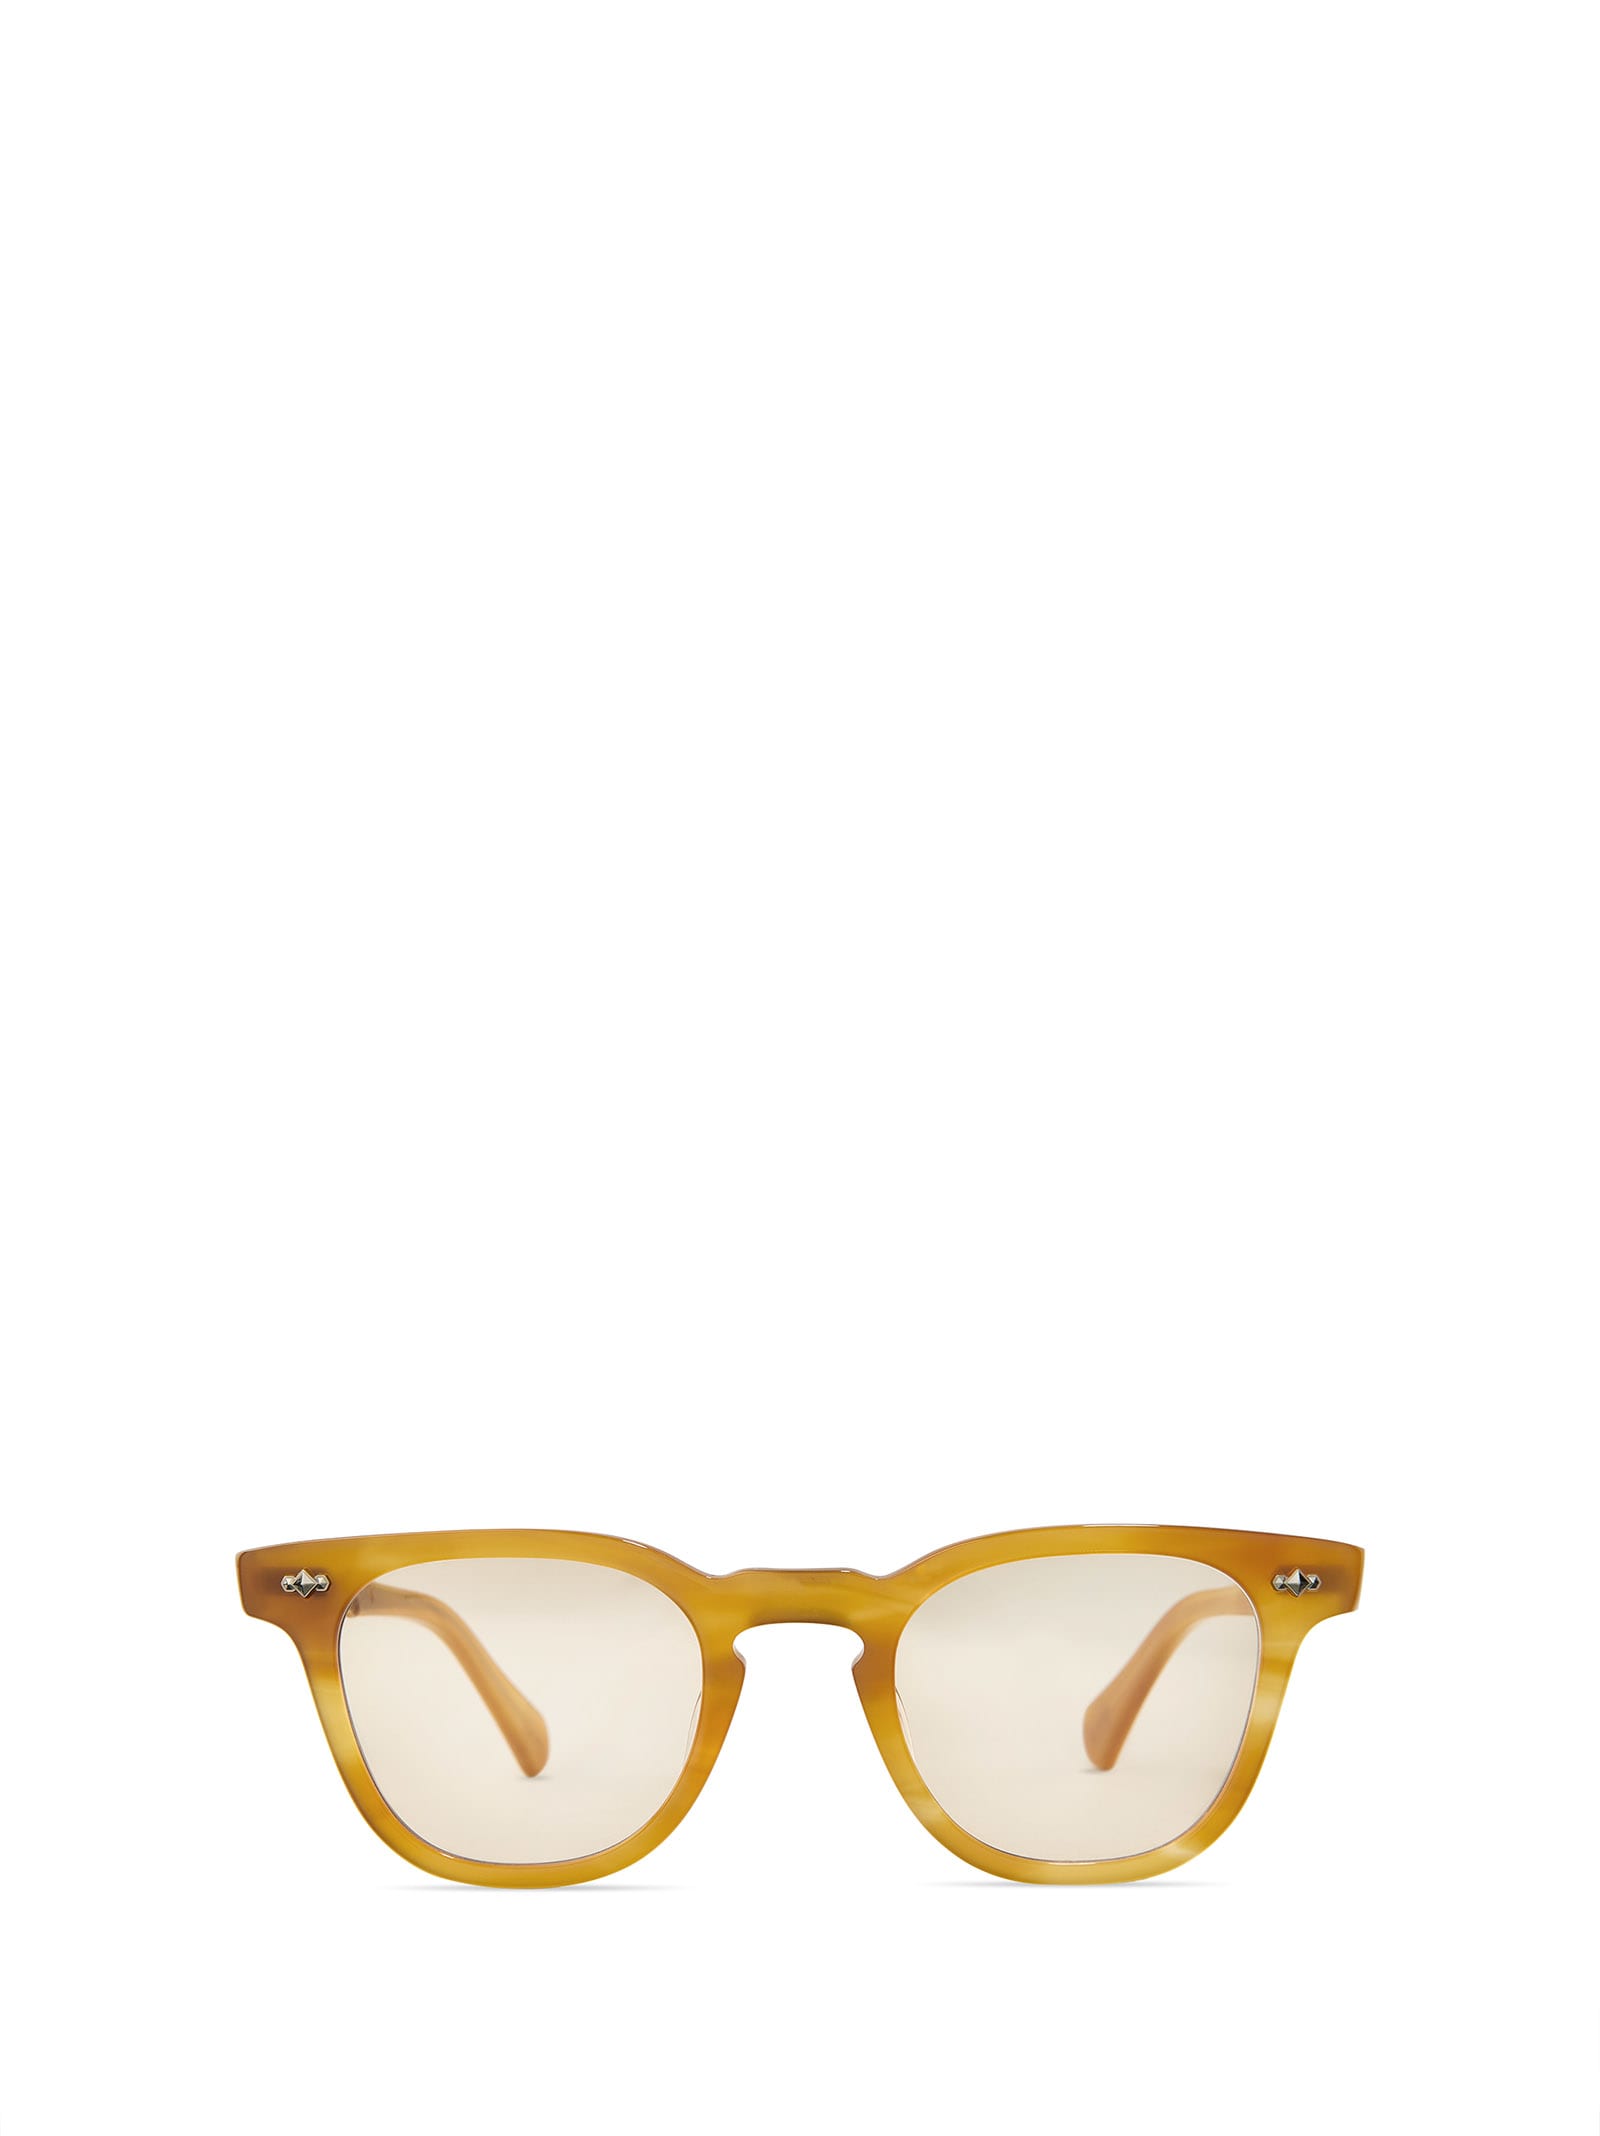 Dean C Honey Tortoise-12k White Gold-demo Beige Glasses